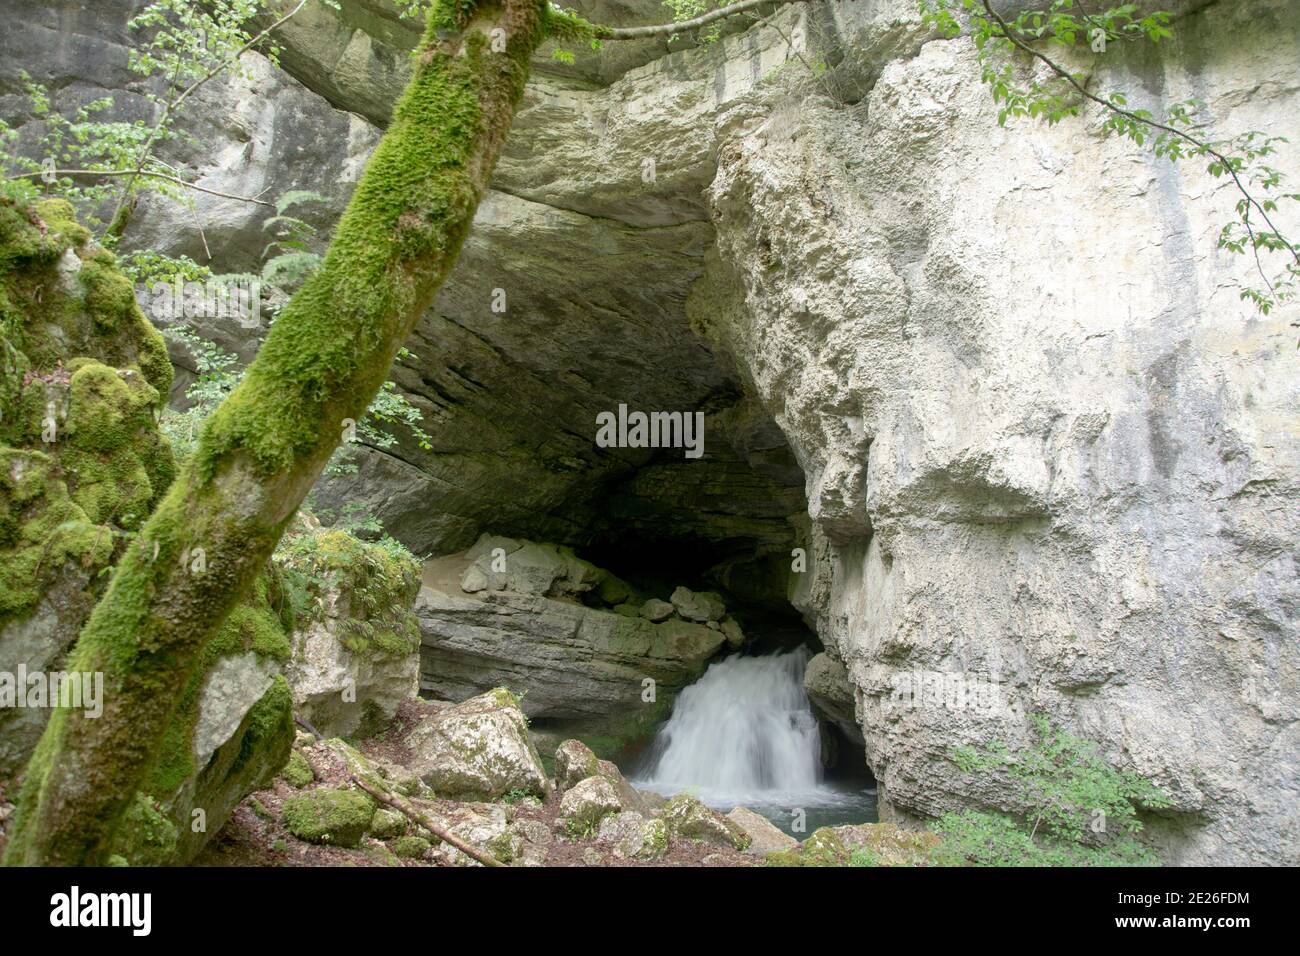 Die spektakuläre Karstquelle des Pontet, einem Zufluss der Loue im französischen Jura Foto Stock